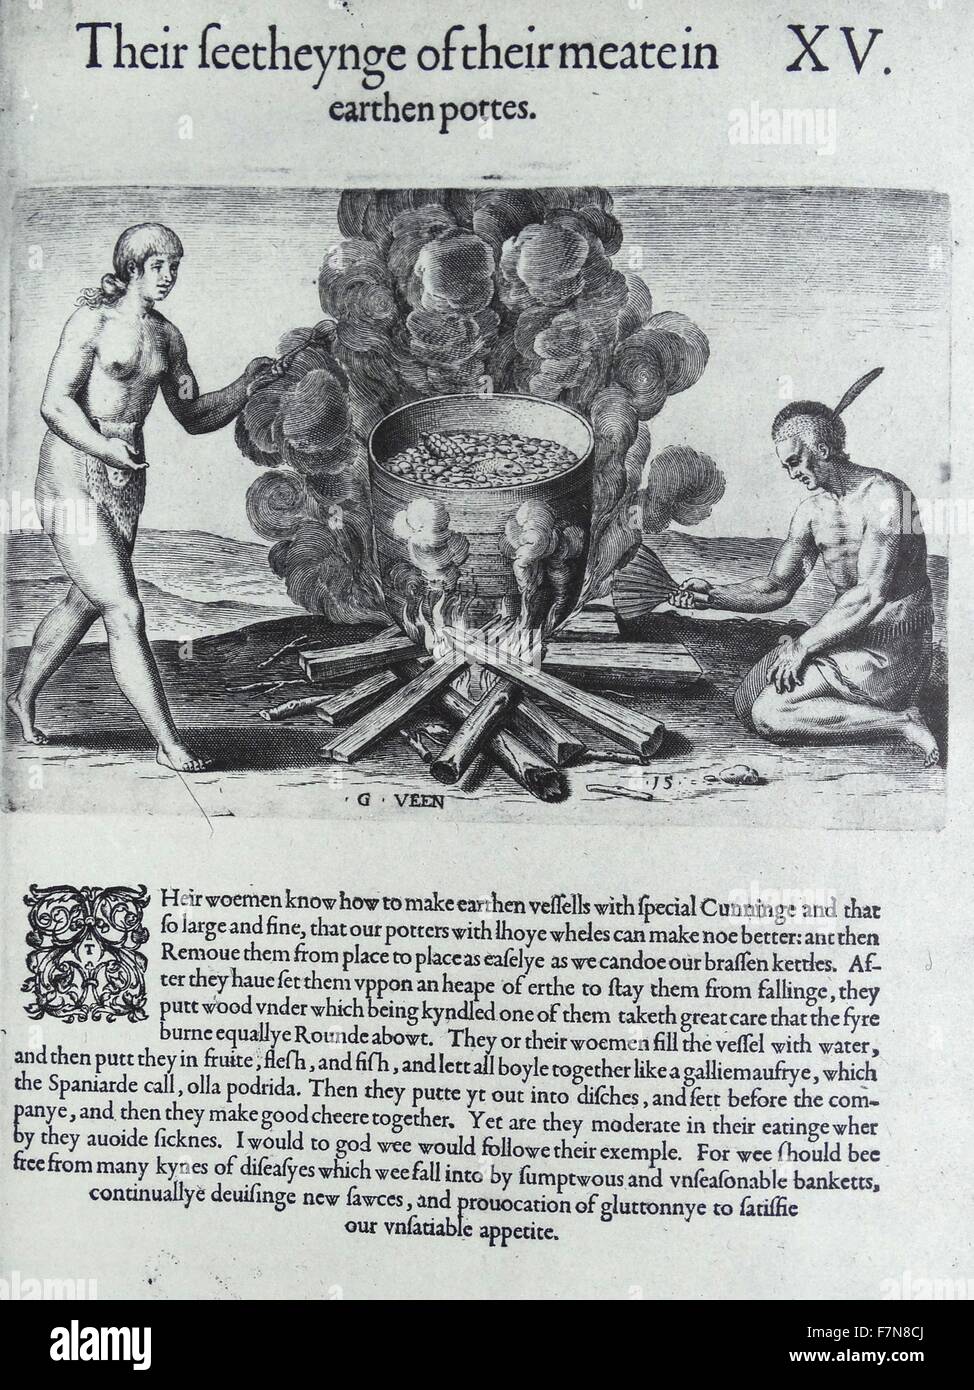 Abbildung der Indianer in einem irdenen Topf kochen. Vom 17. Jahrhundert  Stockfotografie - Alamy